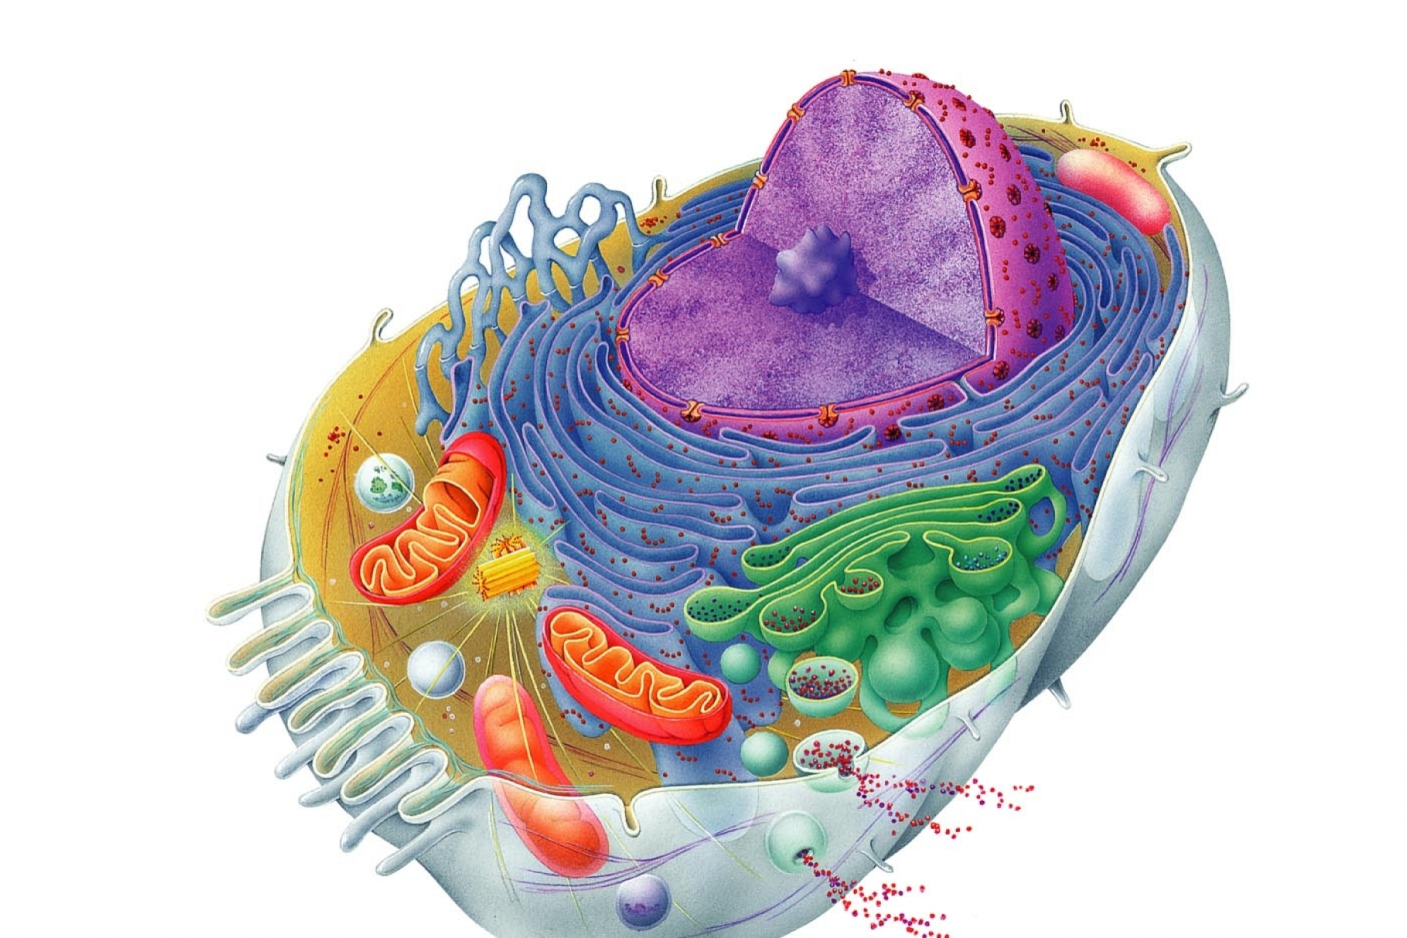 Животная клетка рисунок с подписями органоидов